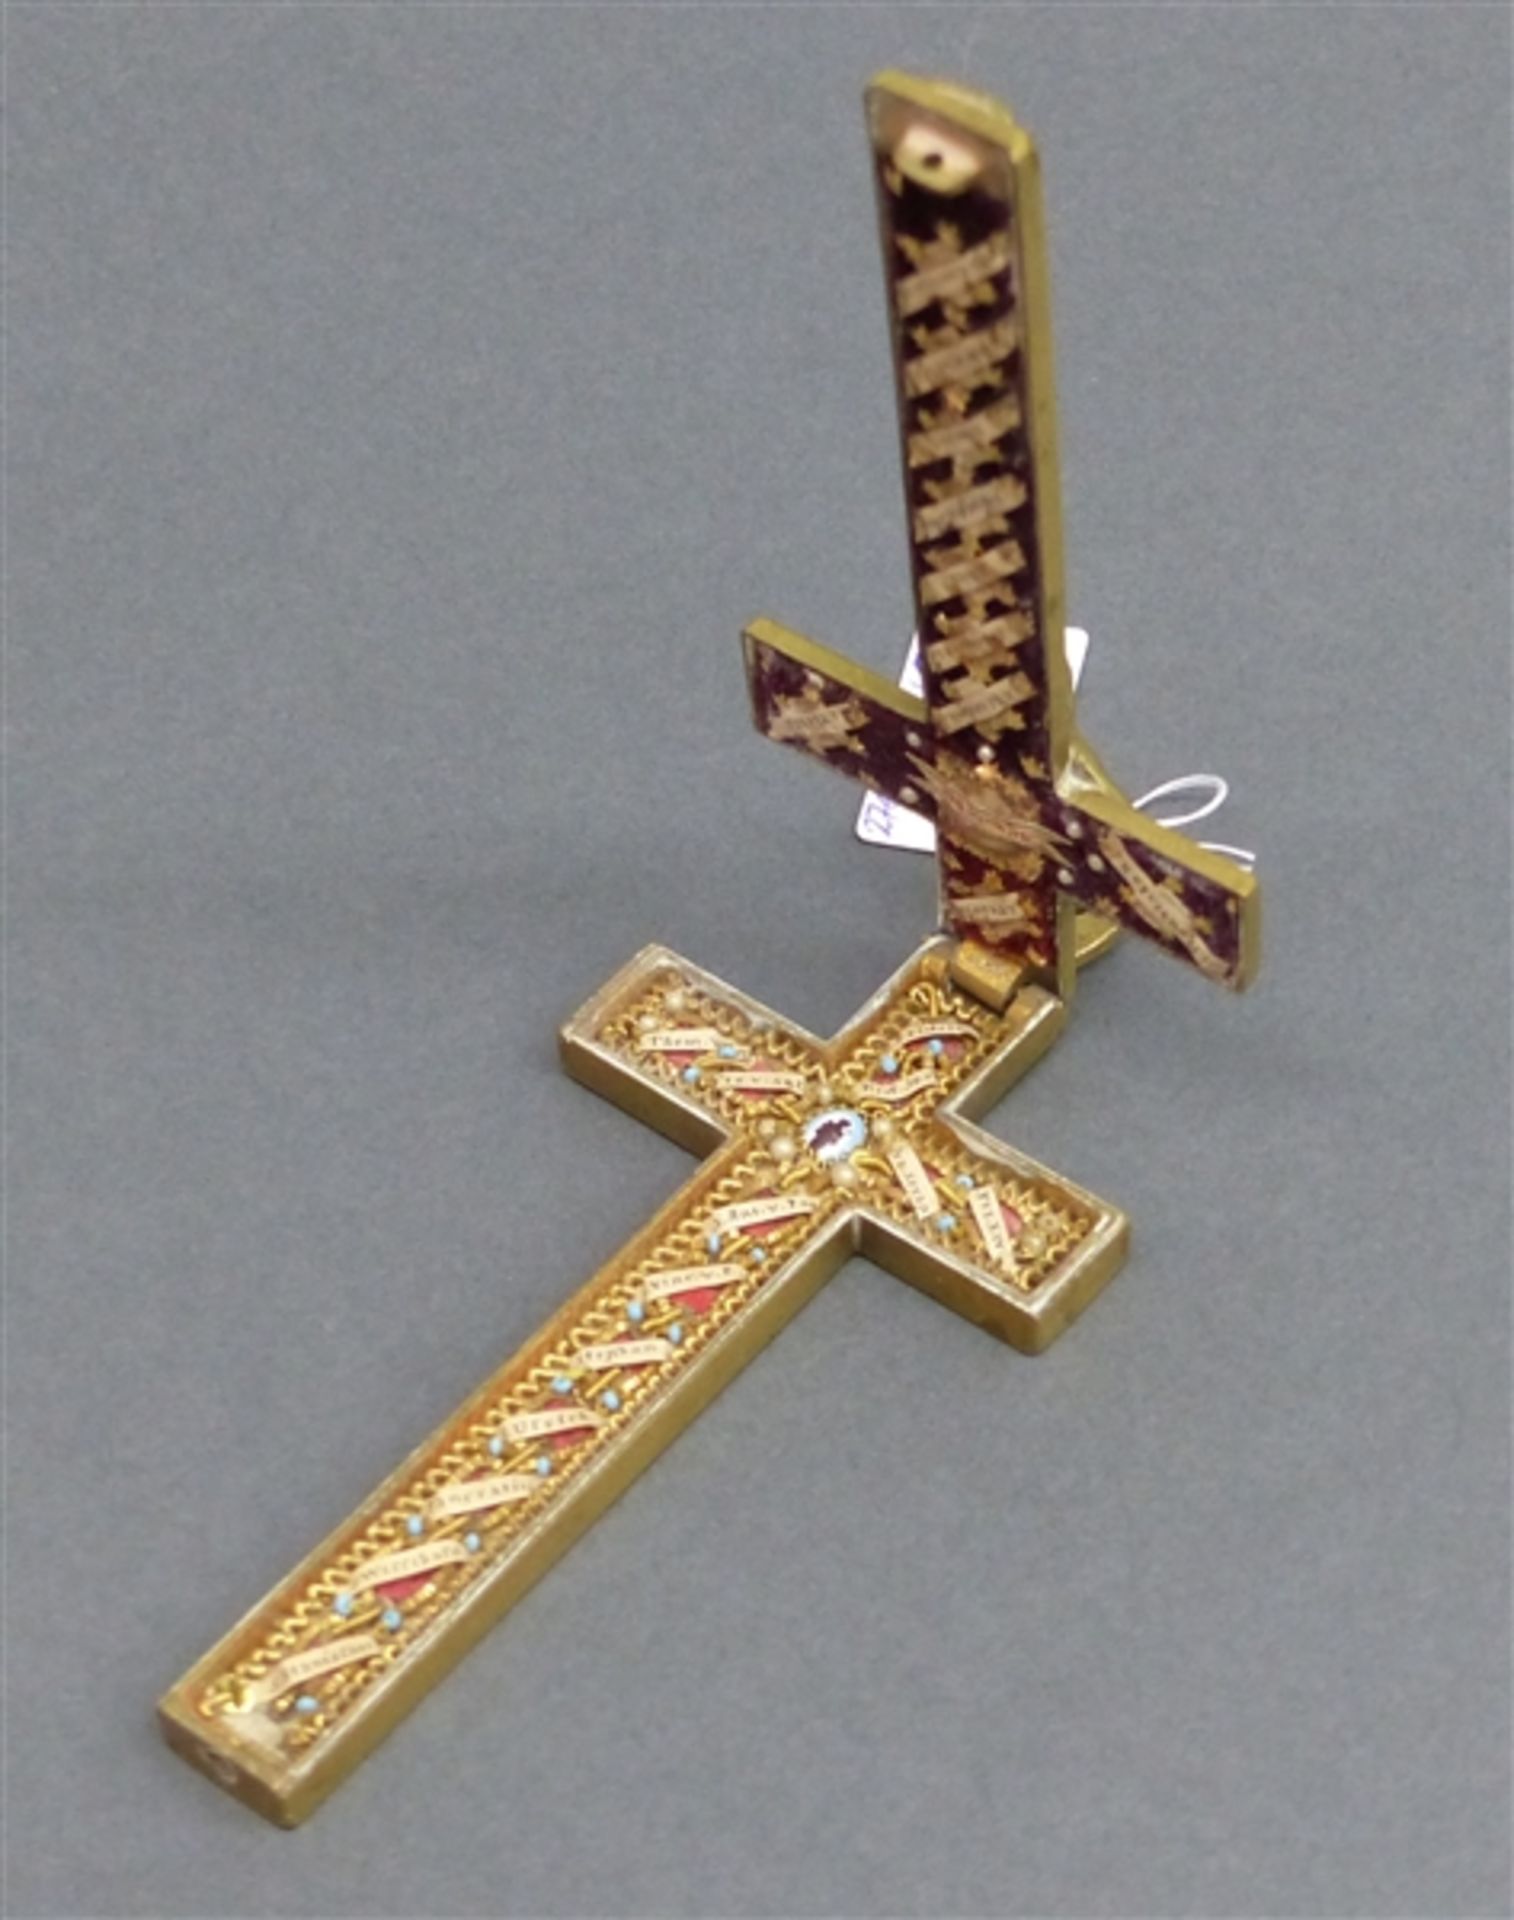 Reliquienkreuz, 19. Jh. Messing, Relief, mit Inhalt, 1 Schräubchen fehlt, h 12 cm,